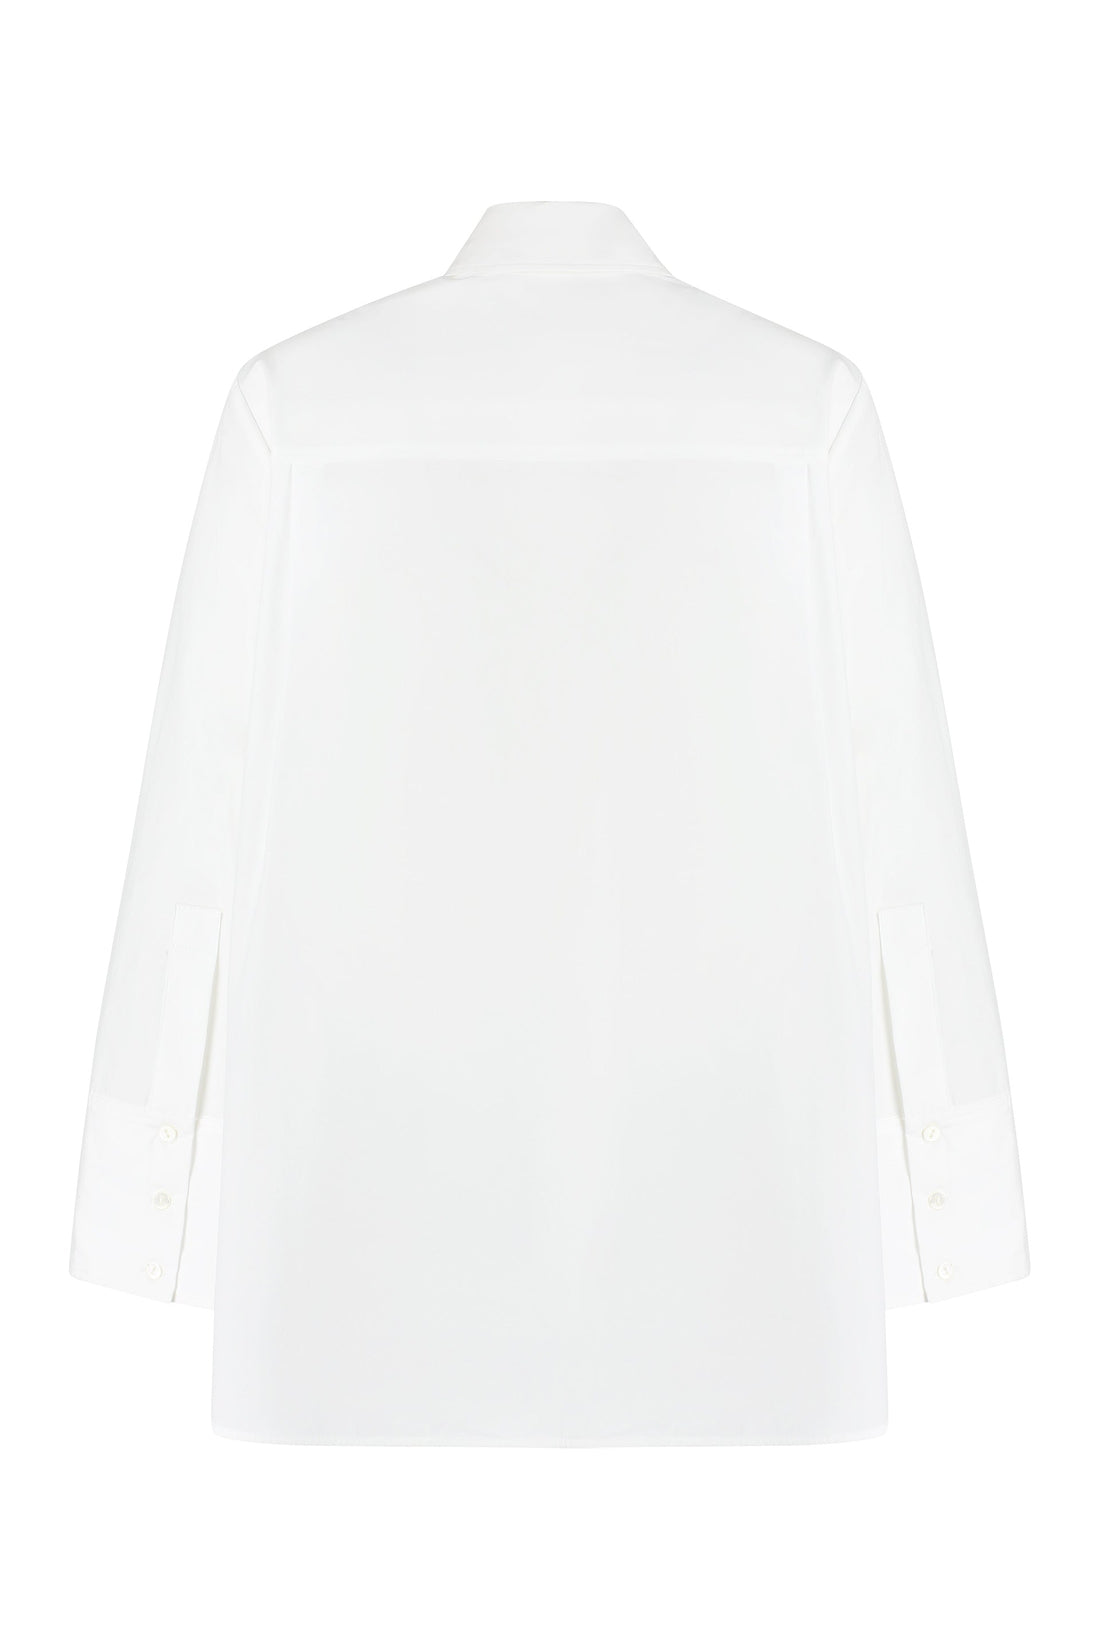 Parosh-OUTLET-SALE-Embroidered cotton shirt-ARCHIVIST